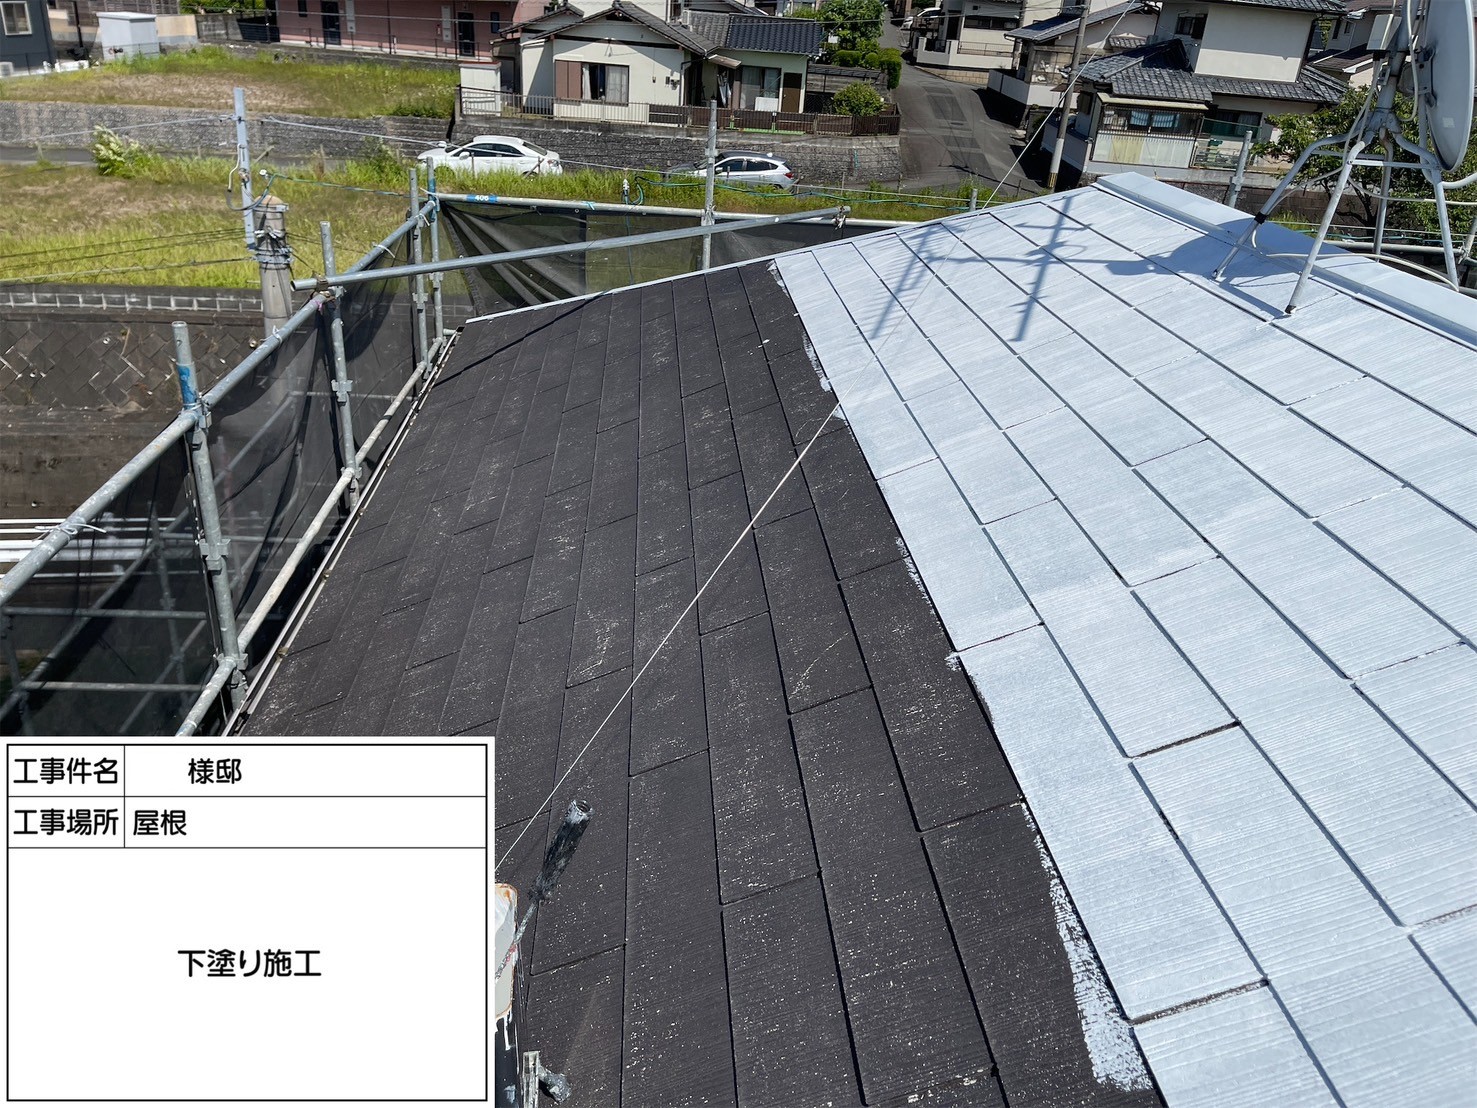 福岡県大野城市南ヶ丘のS様邸で屋根に遮熱エシカルプロクールSI、外壁にピュアピュアシリコンを使用して塗り替え工事を行っています。5/30着工です。【チラシより】